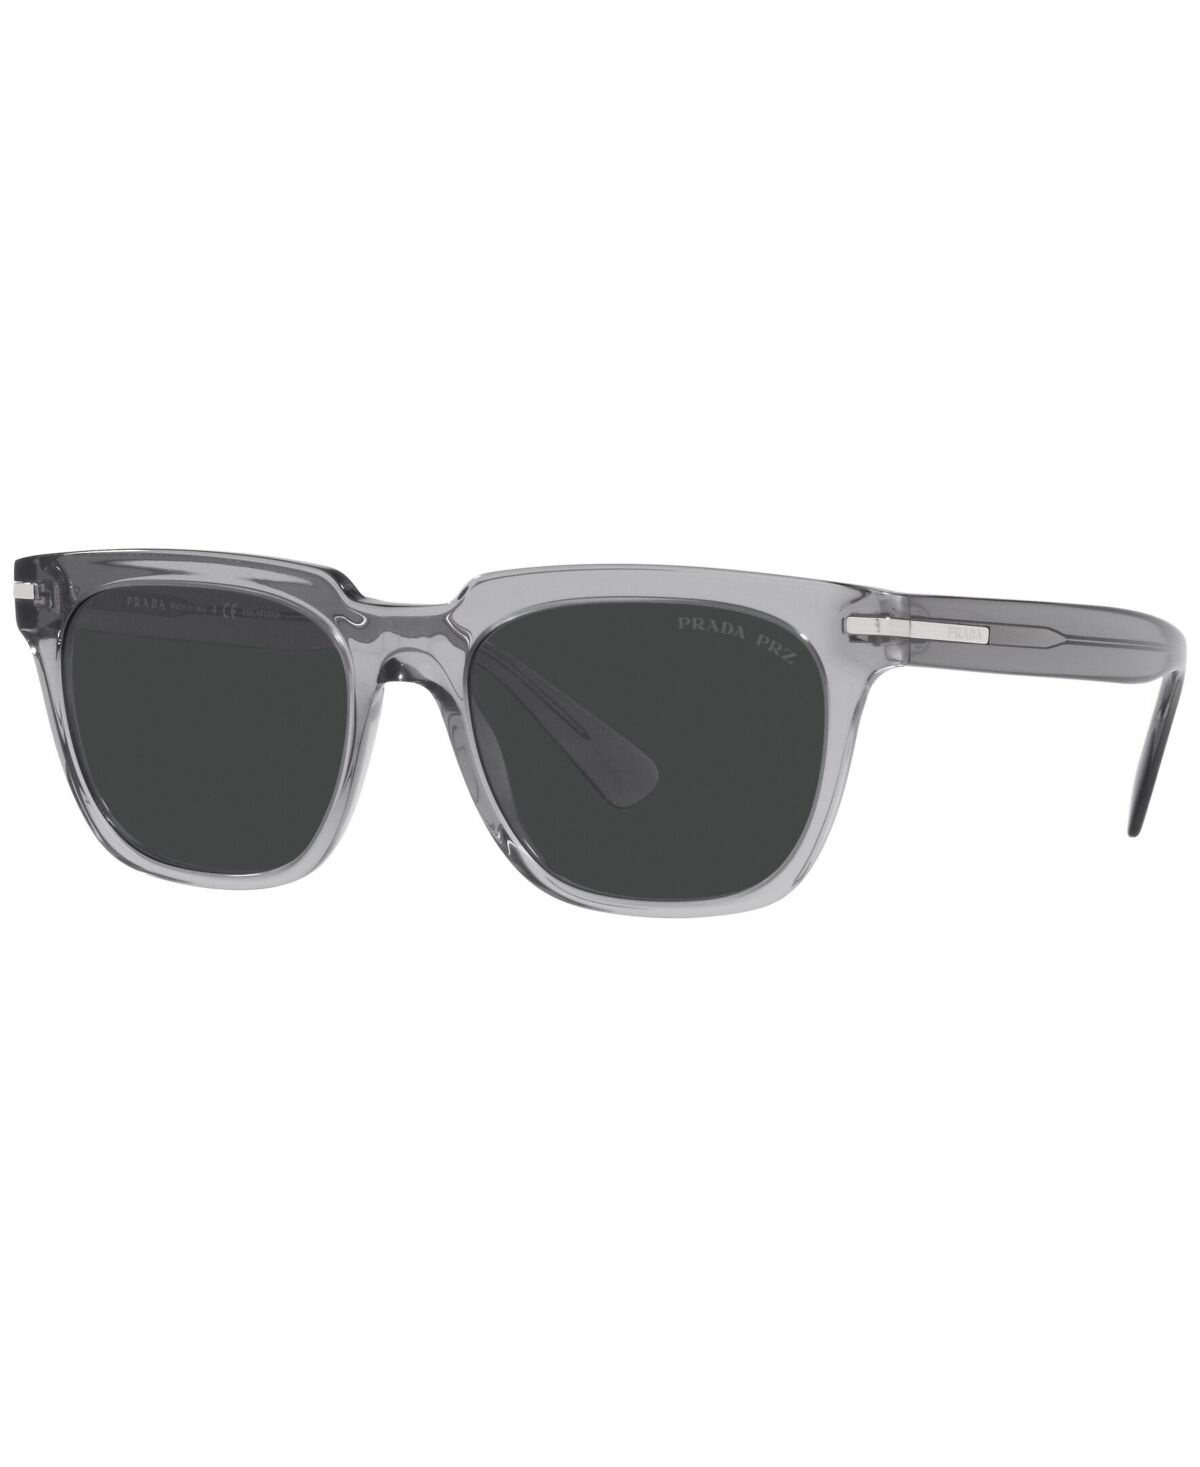 Prada Men's Polarized Sunglasses, Pr 04YS 56 - Transparent Gray